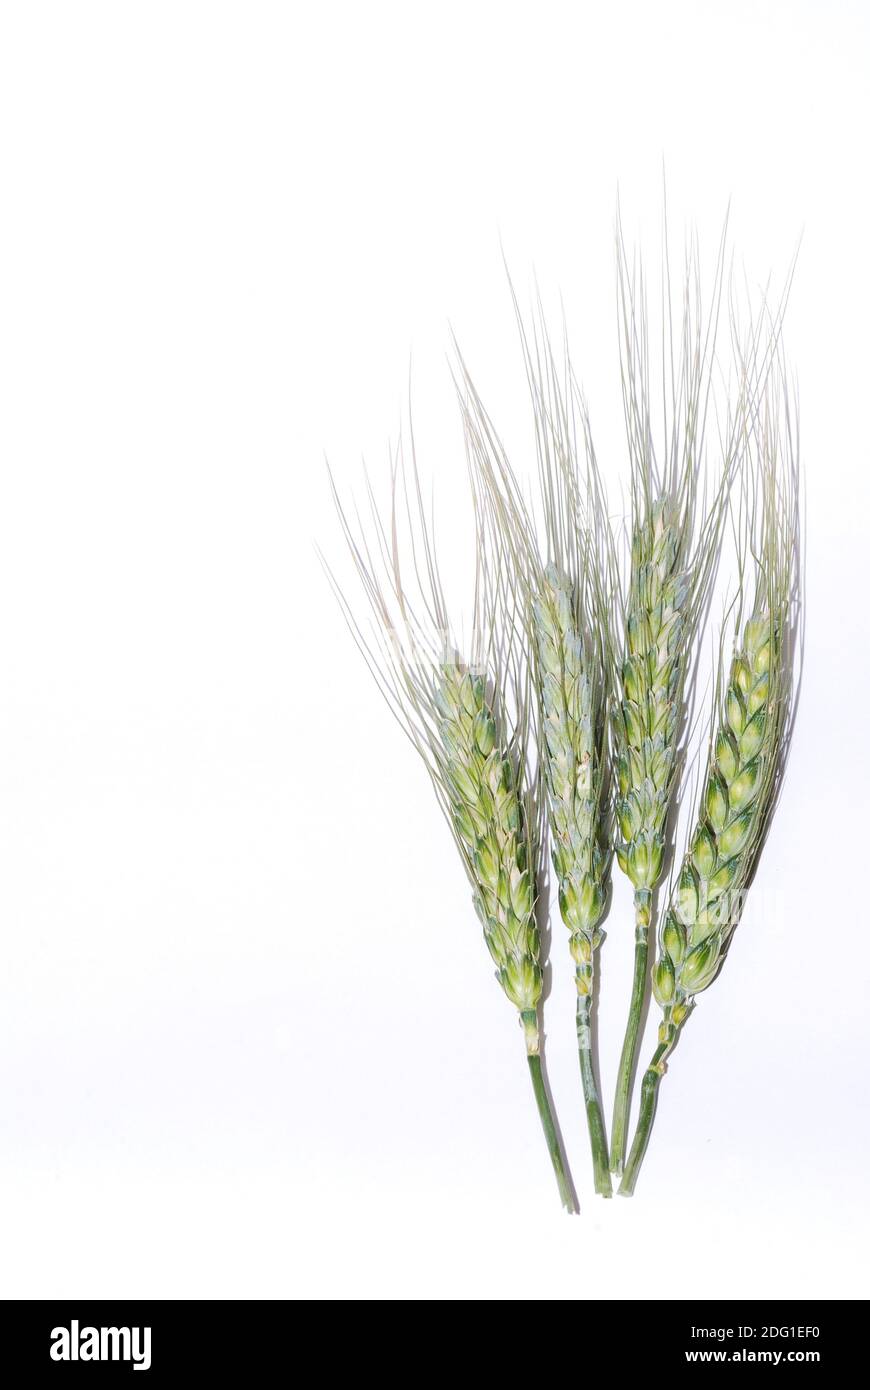 Wheat white background Stock Photo